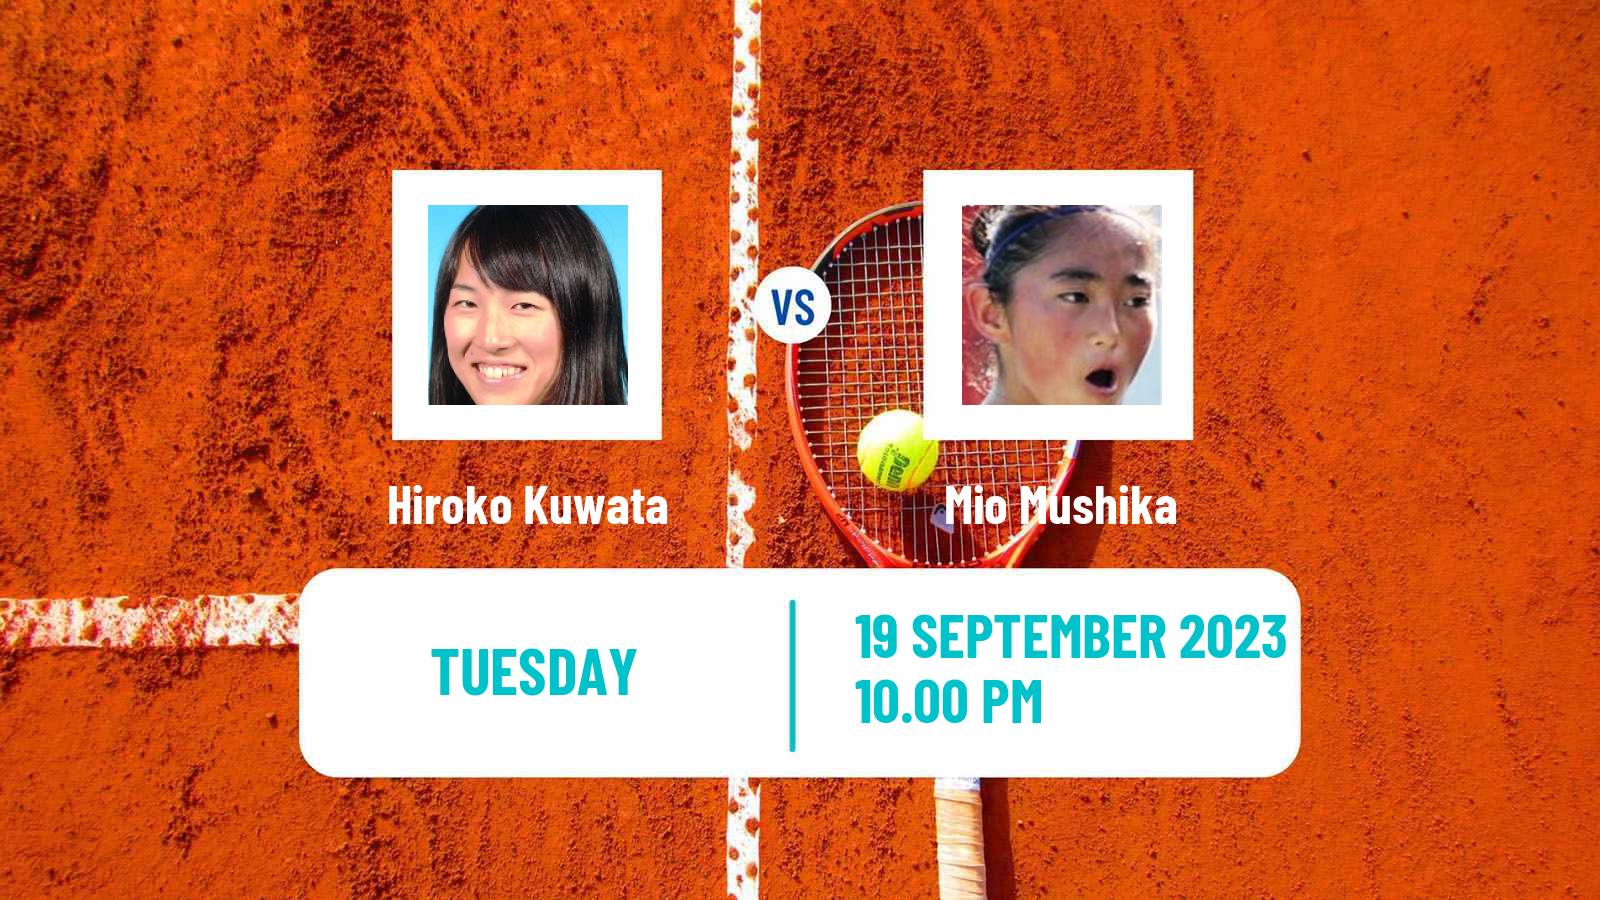 Tennis ITF W25 Kyoto Women Hiroko Kuwata - Mio Mushika